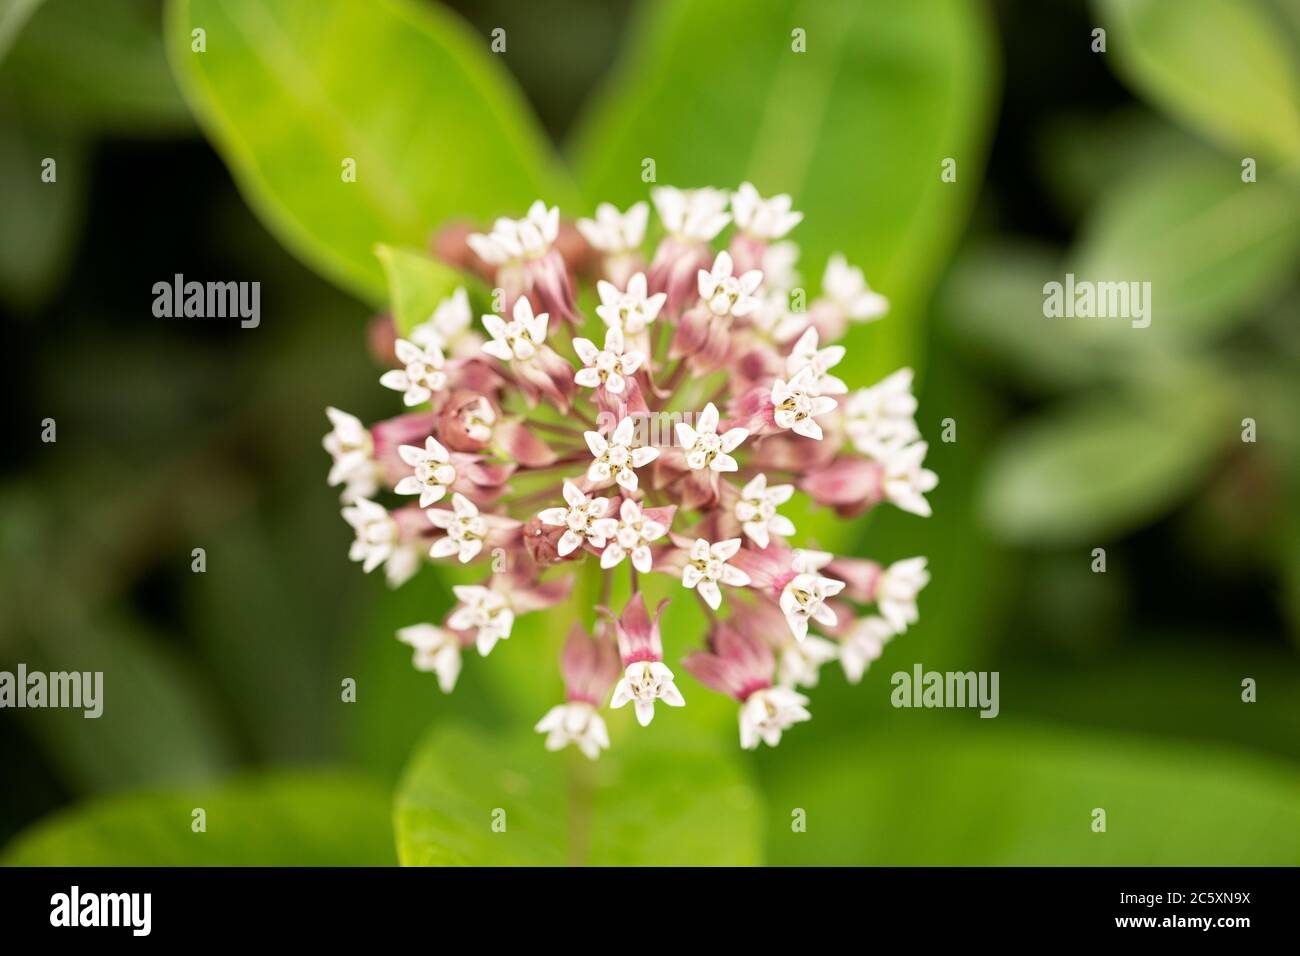 La laitouade commune (Asclepias syriaca) fleurisse dans un jardin d'été. Aussi connu sous le nom de fleur de papillon, de l'herbe à soie, de l'hirondelle soyeuse et de l'herbe à soie de Virginie. Banque D'Images